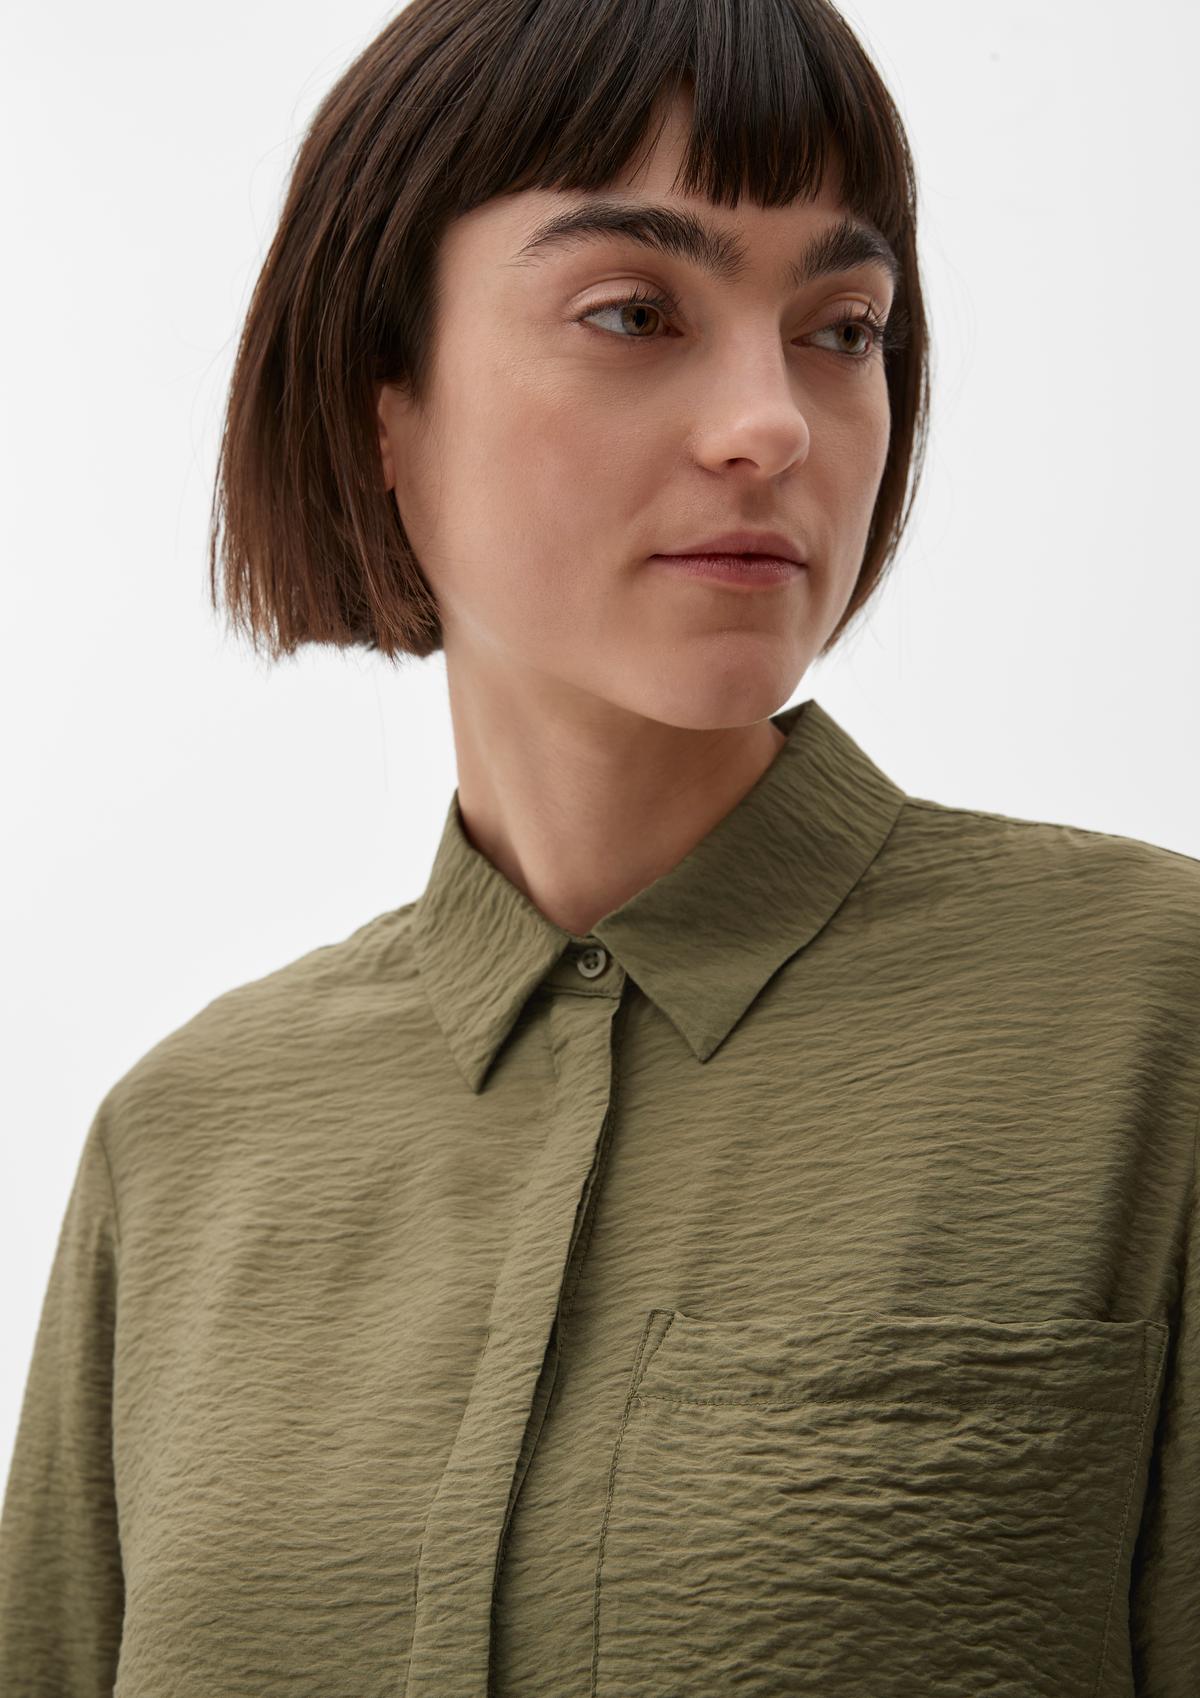 s.Oliver Viscose blend blouse